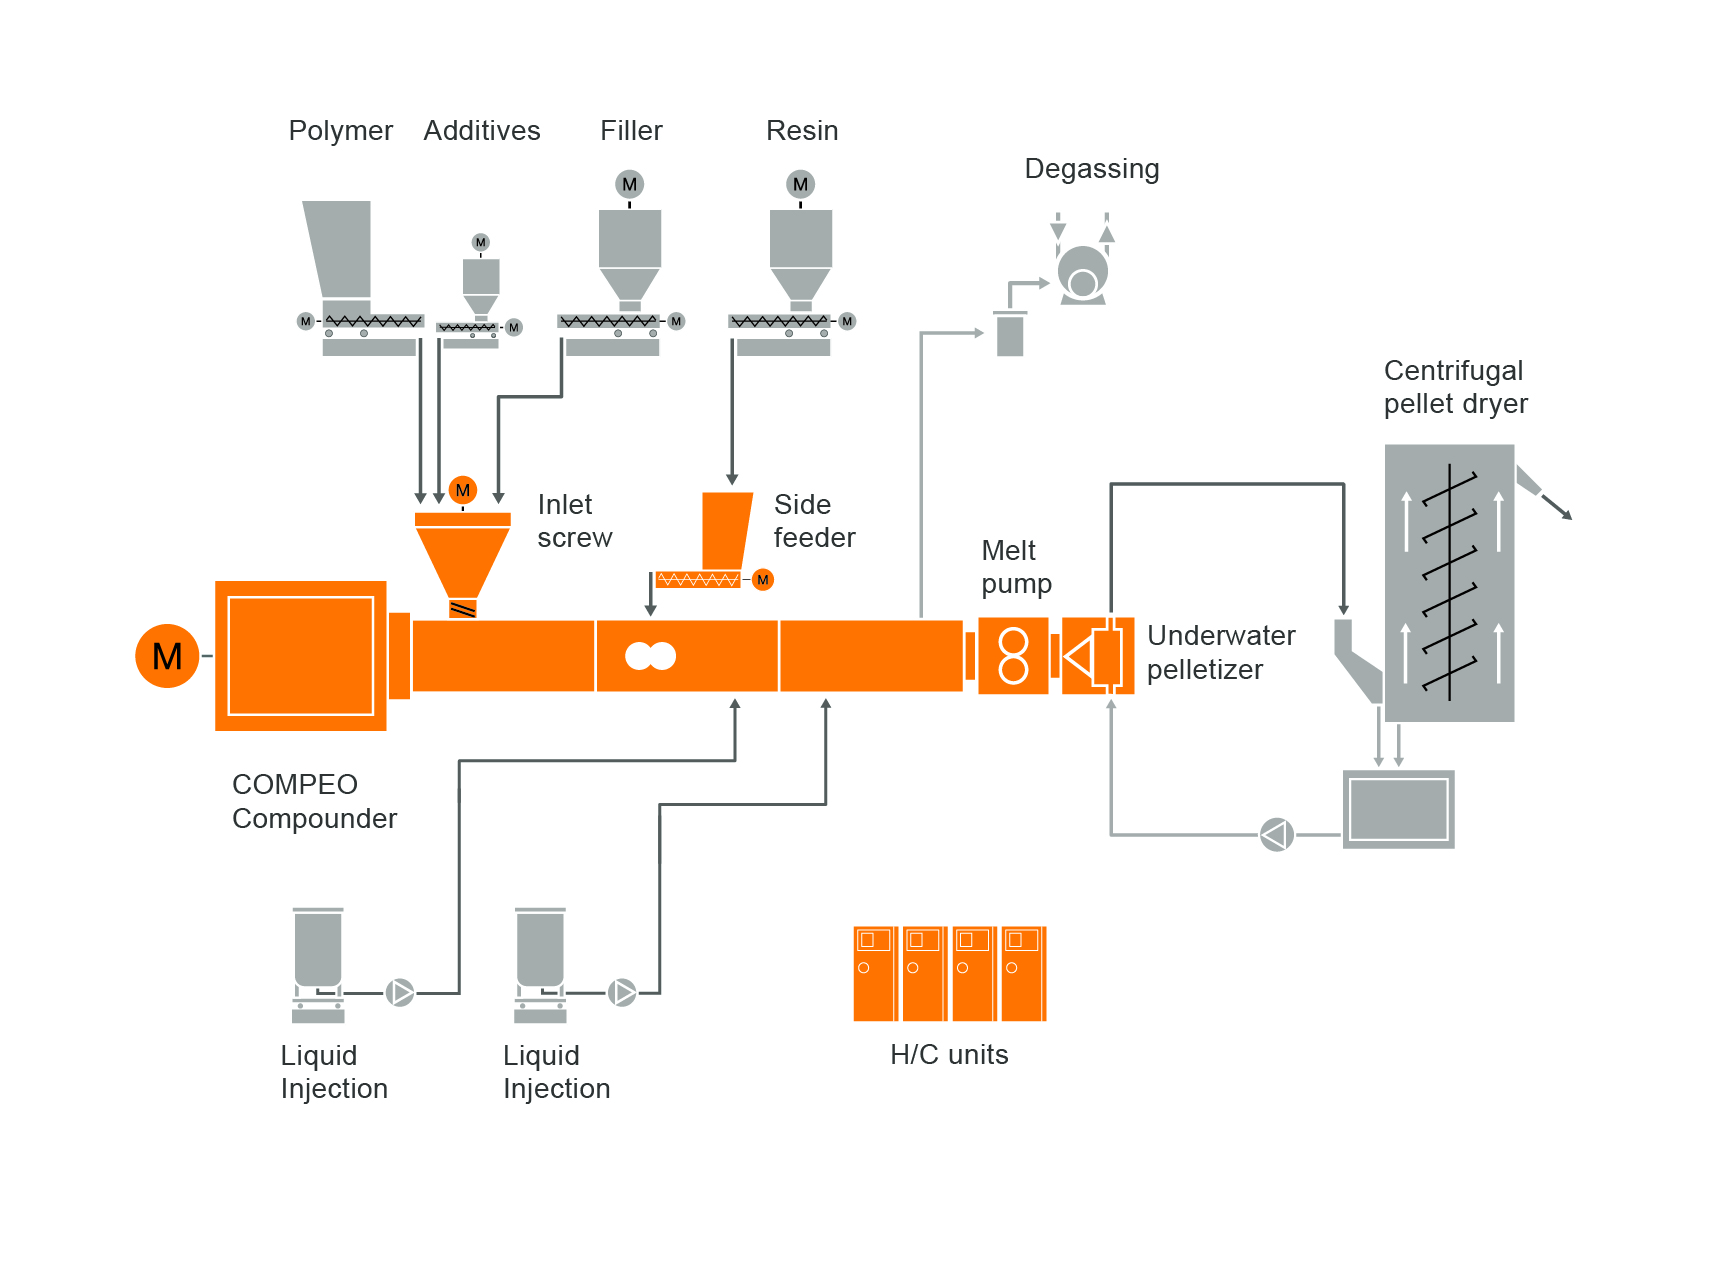 ホットメルト（熱溶融型）接着剤混練システムのための典型的な工場内レイアウト